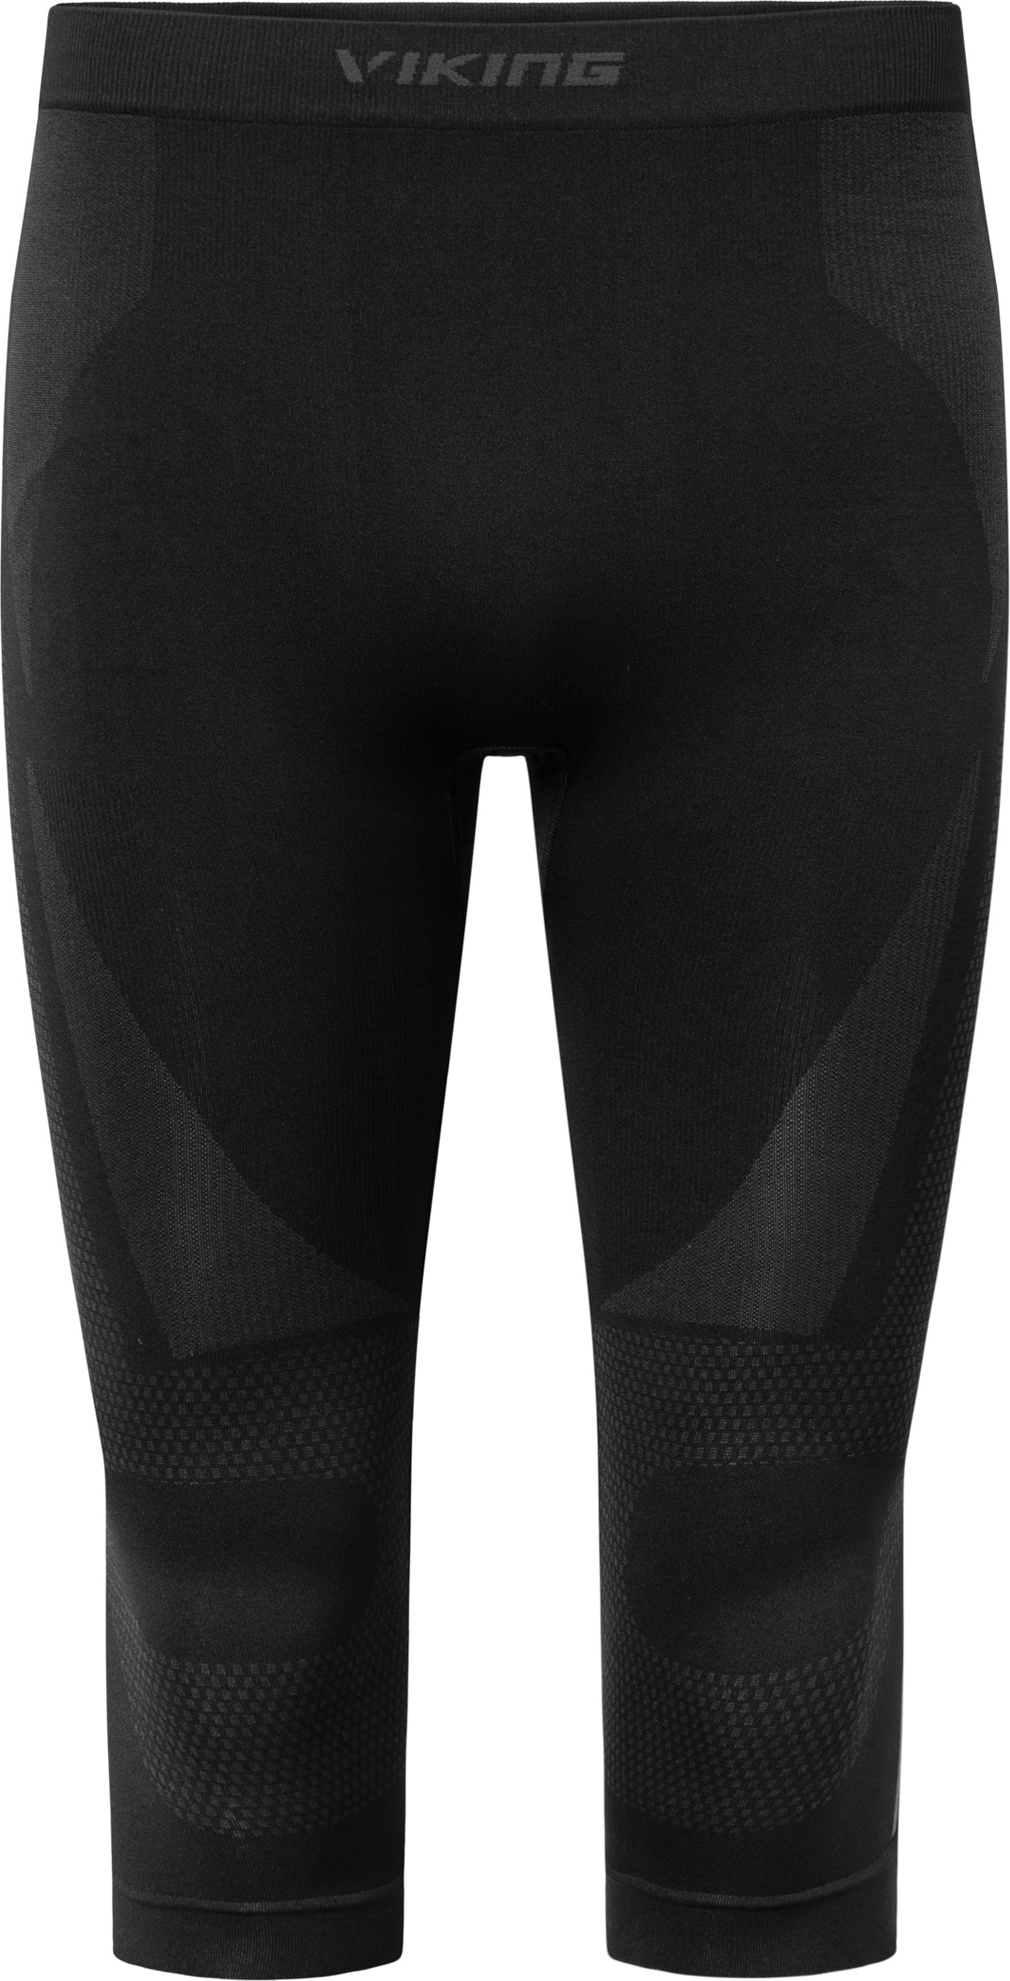 Pánské funkční kalhoty VIKING Eiger černá (3/4 Set) Velikost: S